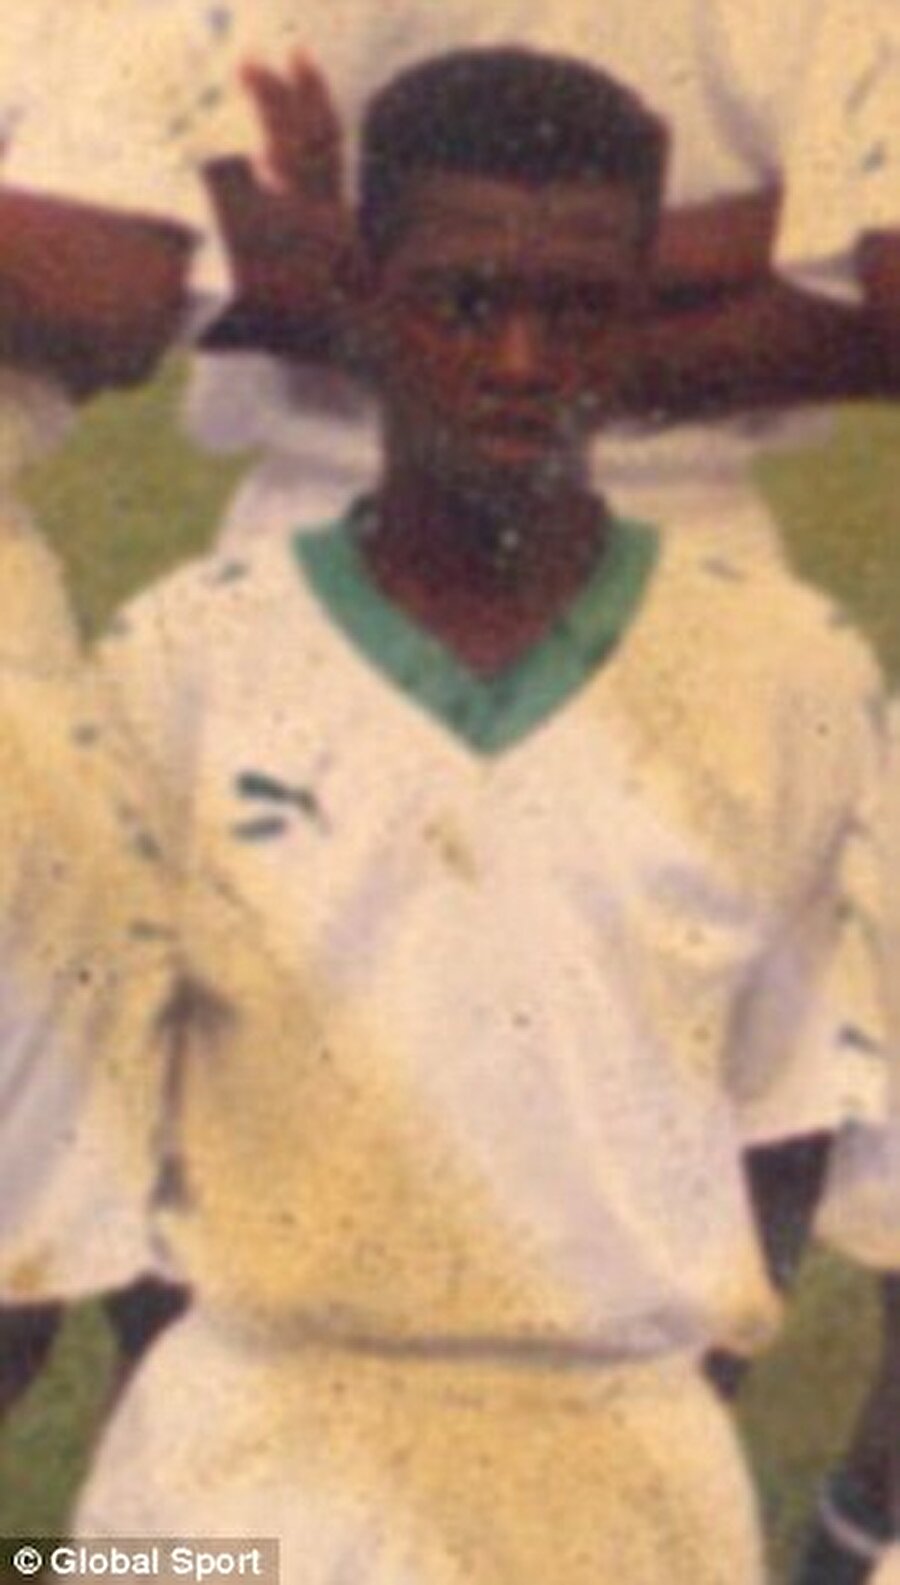 1984 yılında dünyaya gelen Adebayor, ailesini seçme şansına sahip değildi.

                                    
                                    
                                
                                